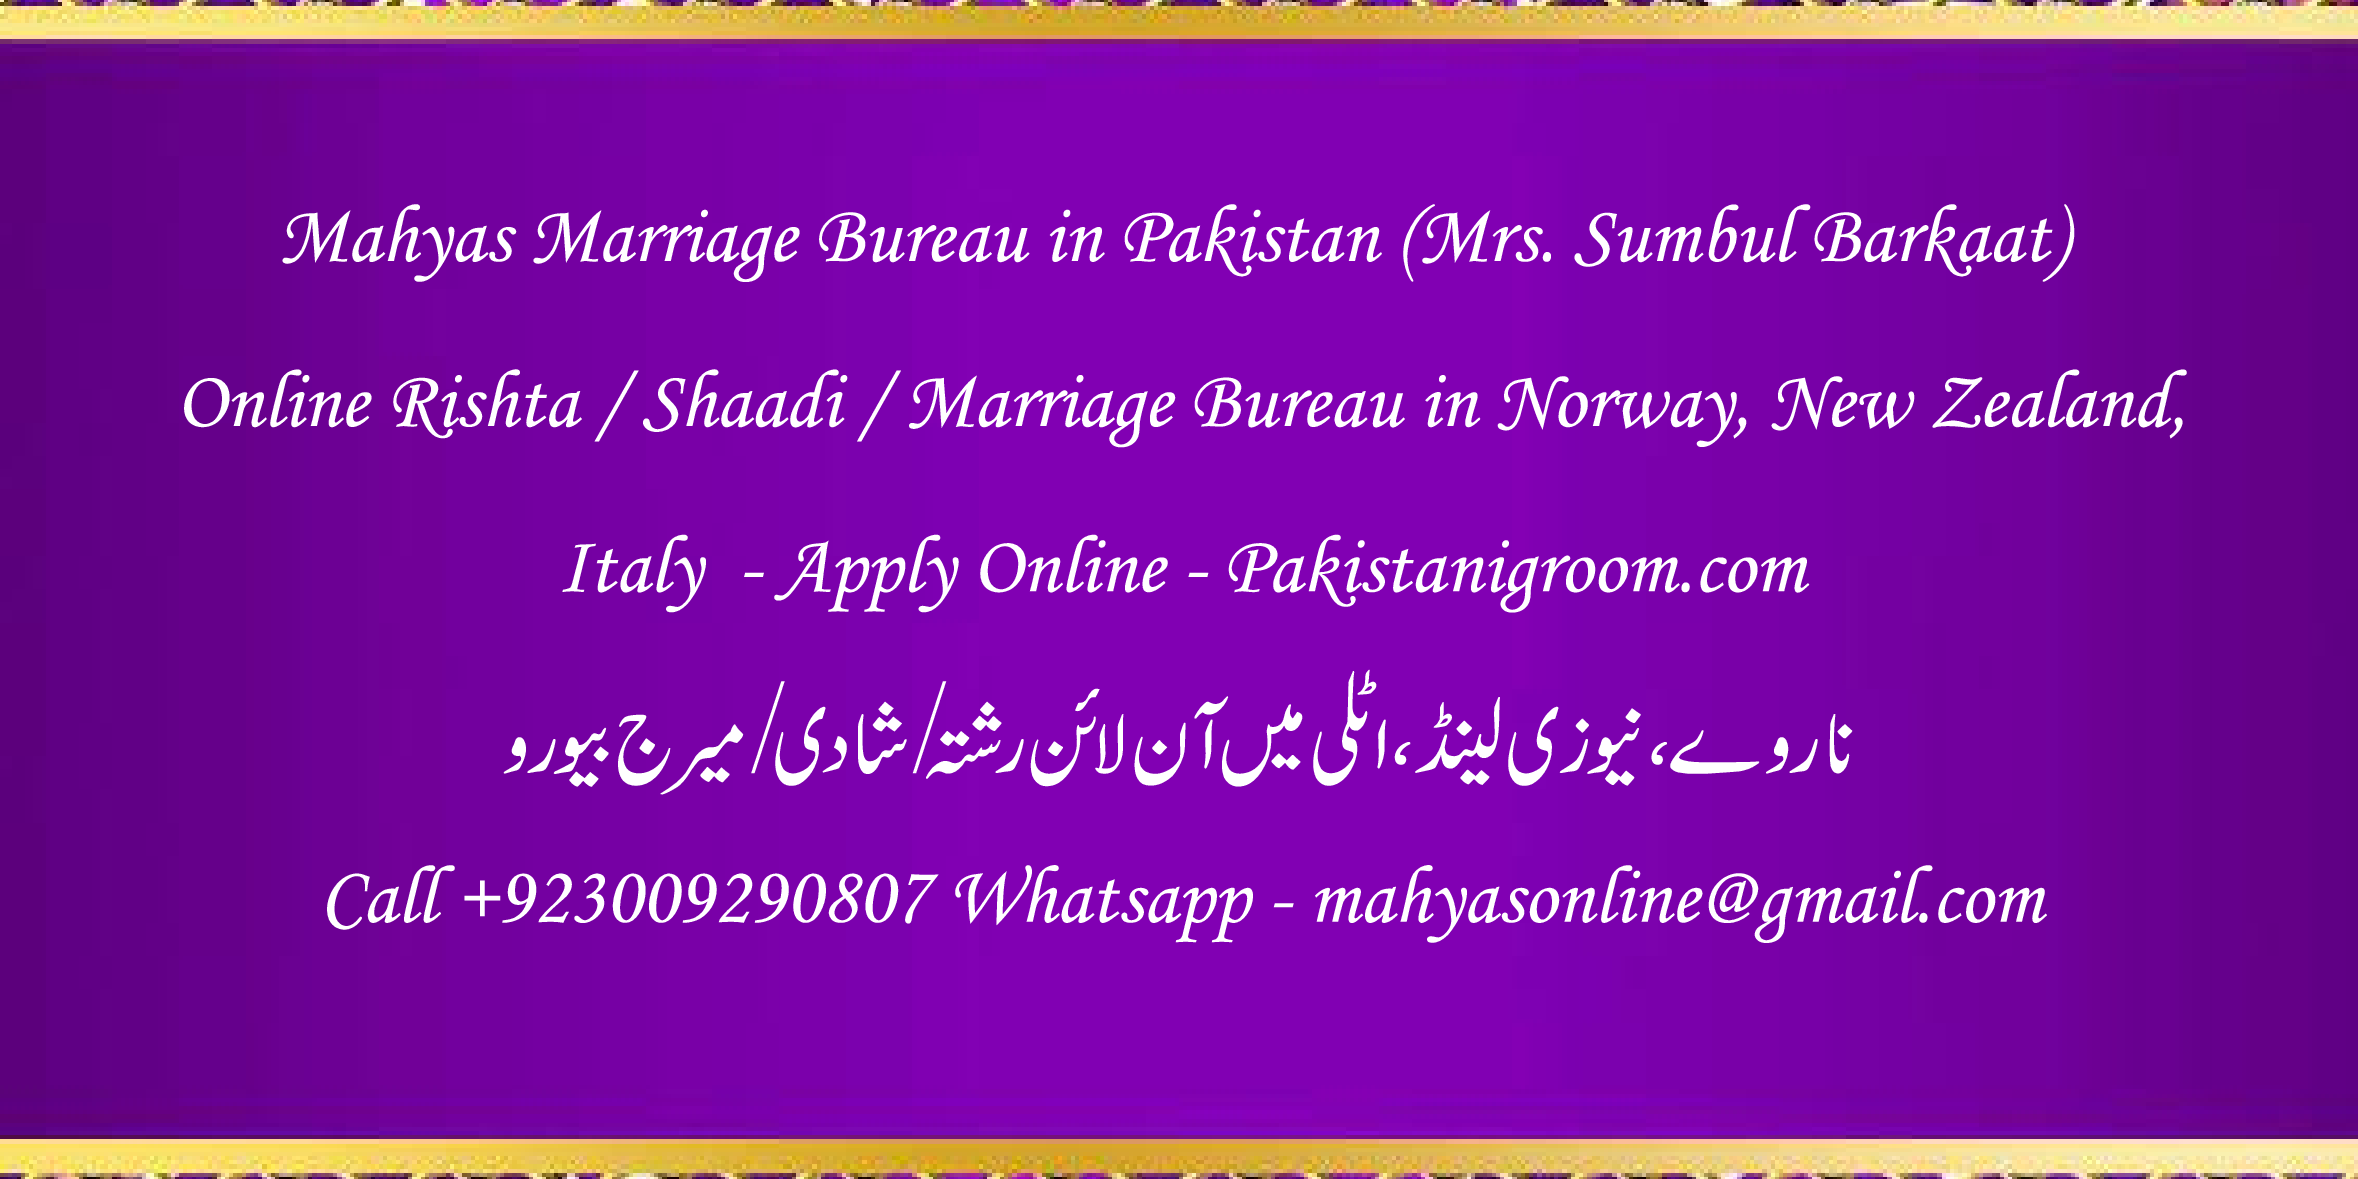 Mahyas-marriage-bureau-Karachi-Pakistan-for-Shia-Sunni-Remarriage-Divorce-Widow-Second-marriage-Punjabi-Pashto-Urdu-18.png